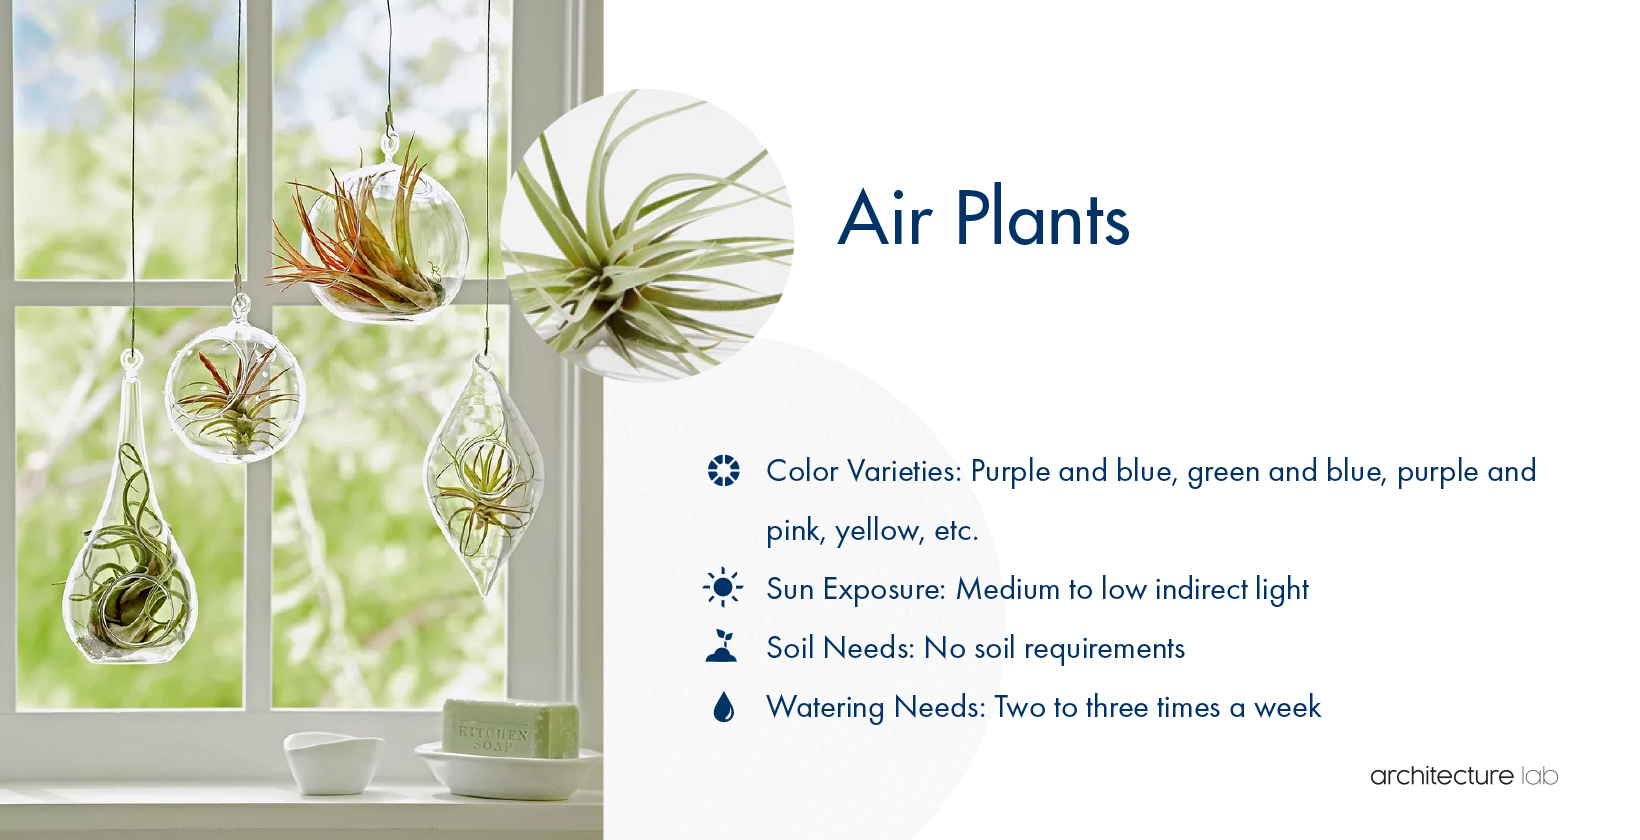 11. Air plants